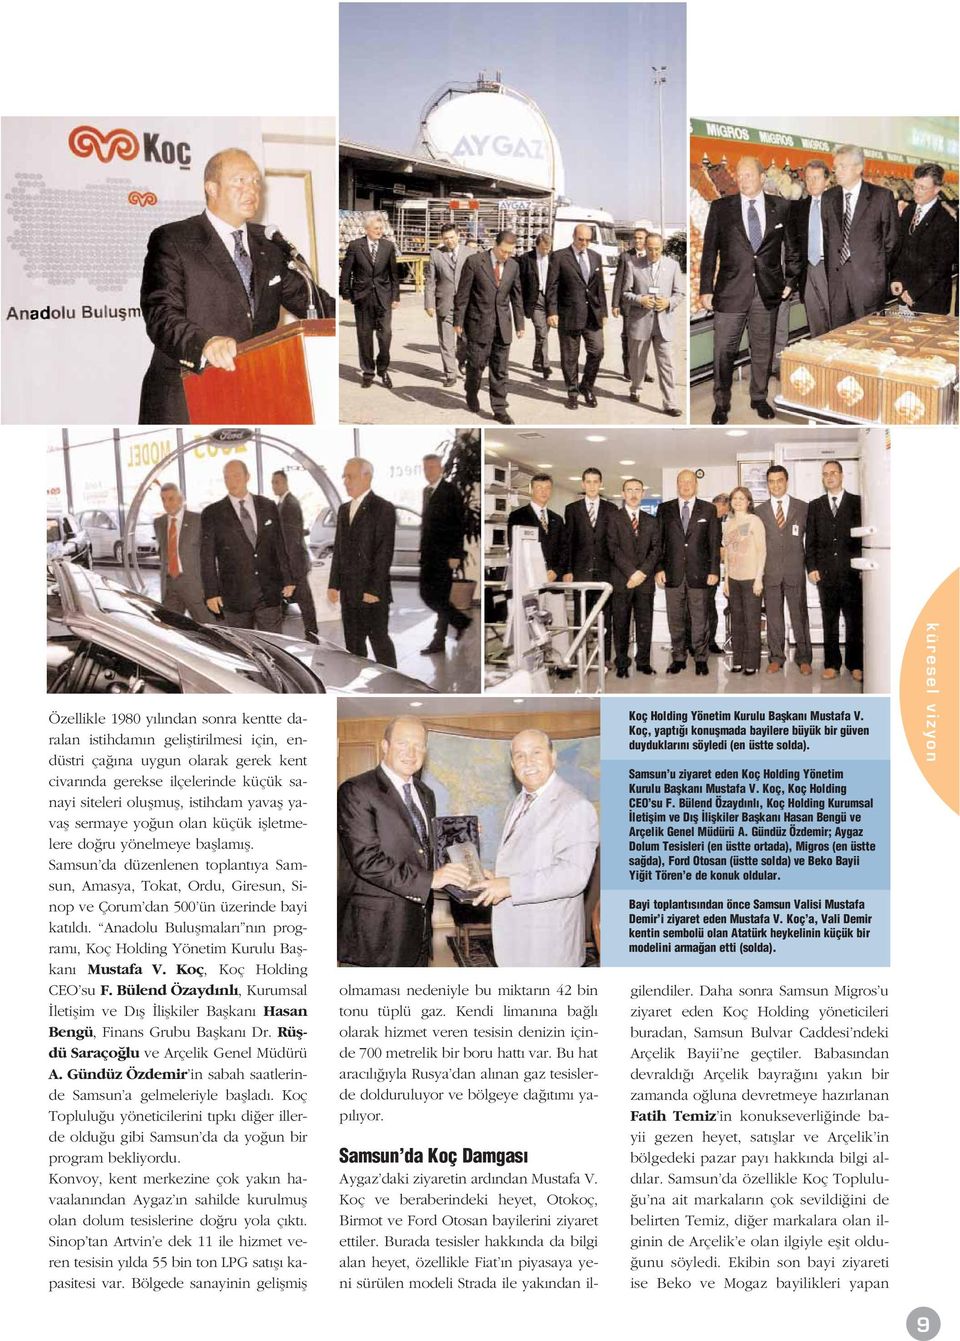 Anadolu Buluflmalar n n program, Koç Holding Yönetim Kurulu Baflkan Mustafa V. Koç, Koç Holding CEO su F.